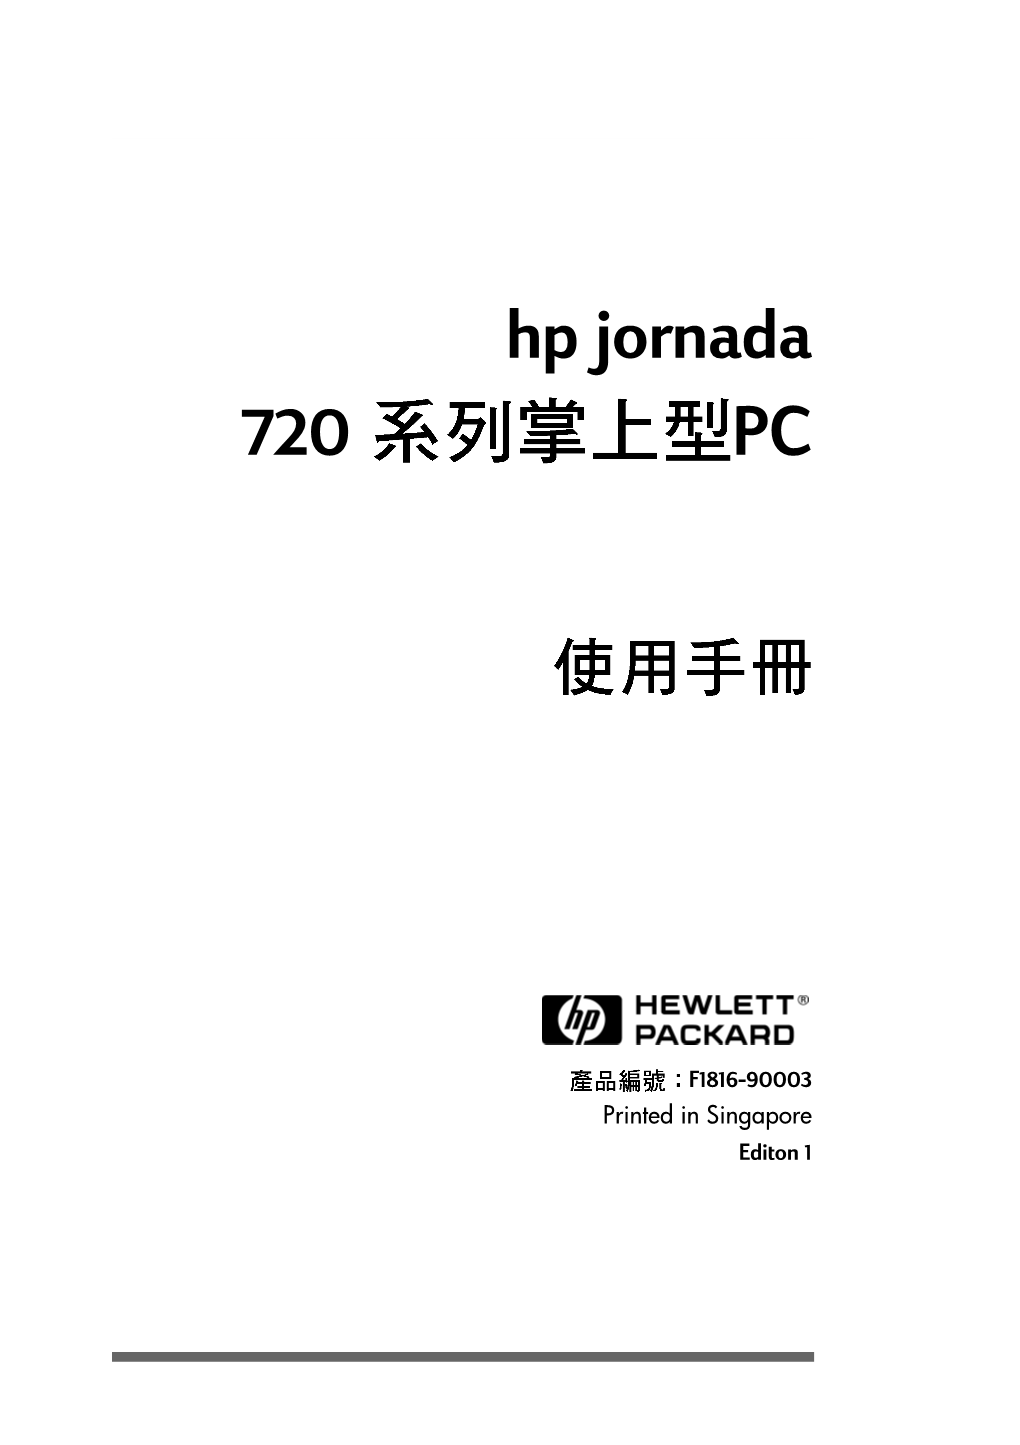 Hp Jornada 720 PC